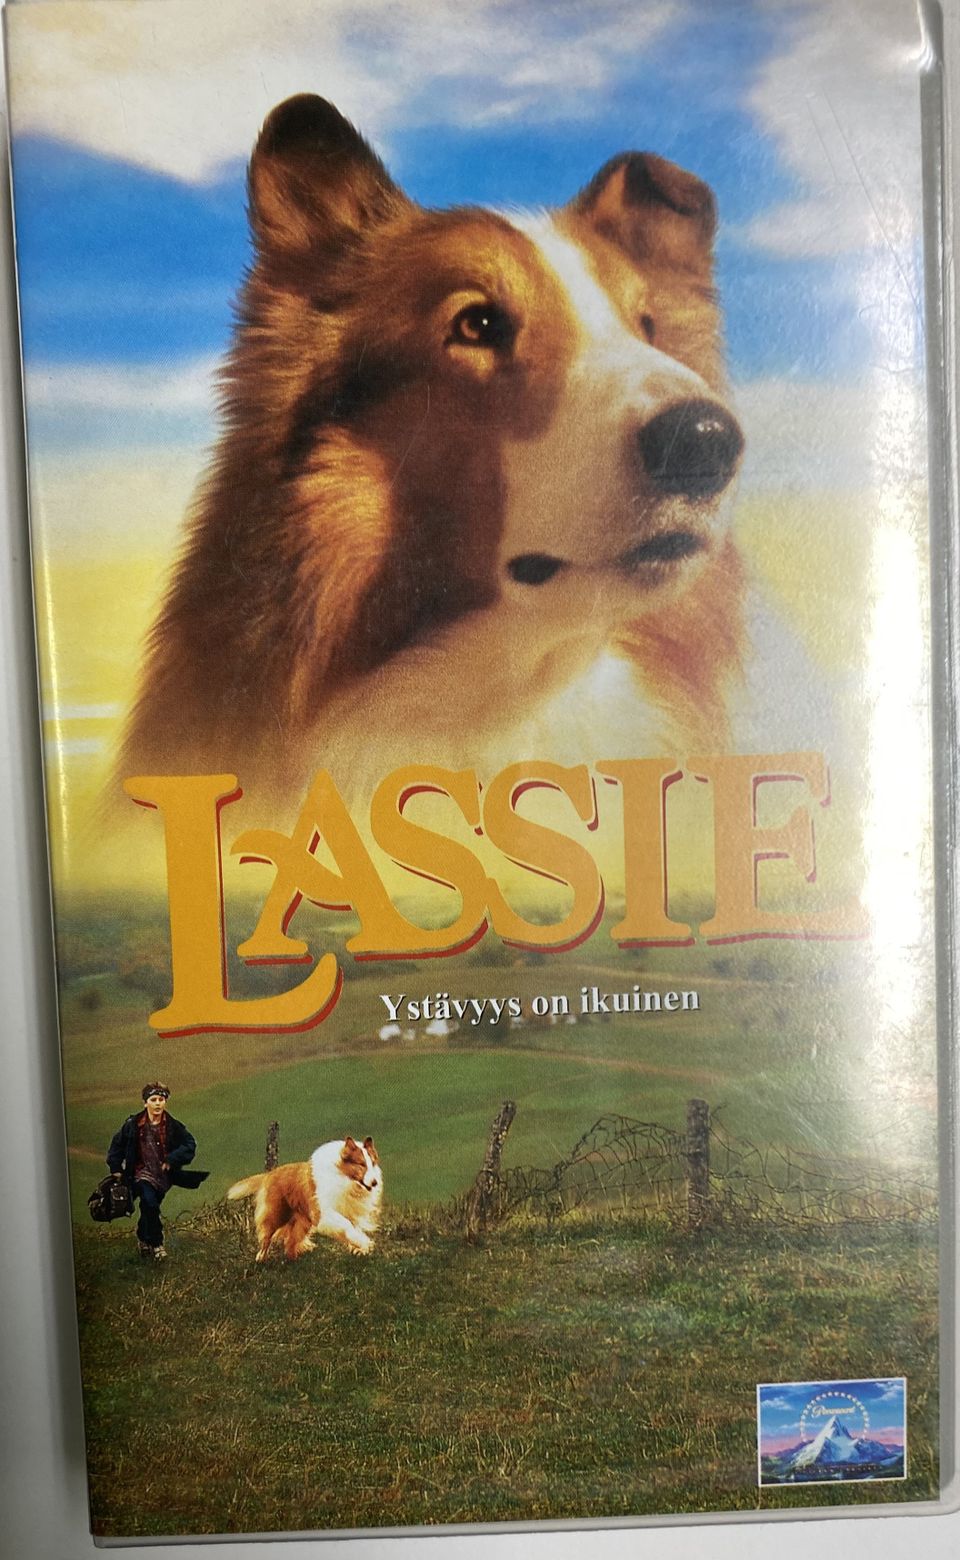 VHS-kasetti Lassie Ystävyys on ikuinen